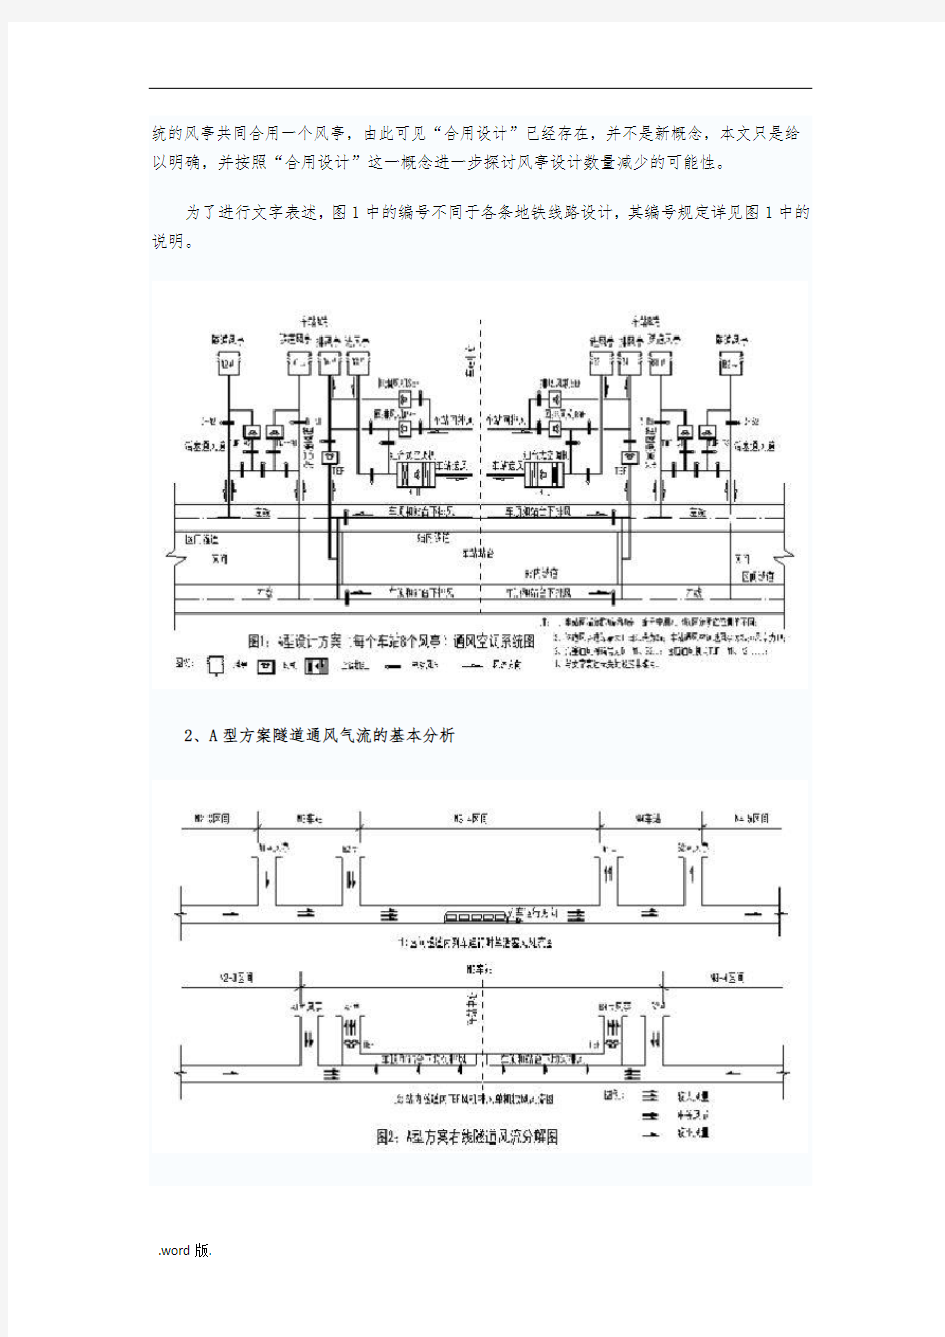 广州地铁环控系统设计方案研究